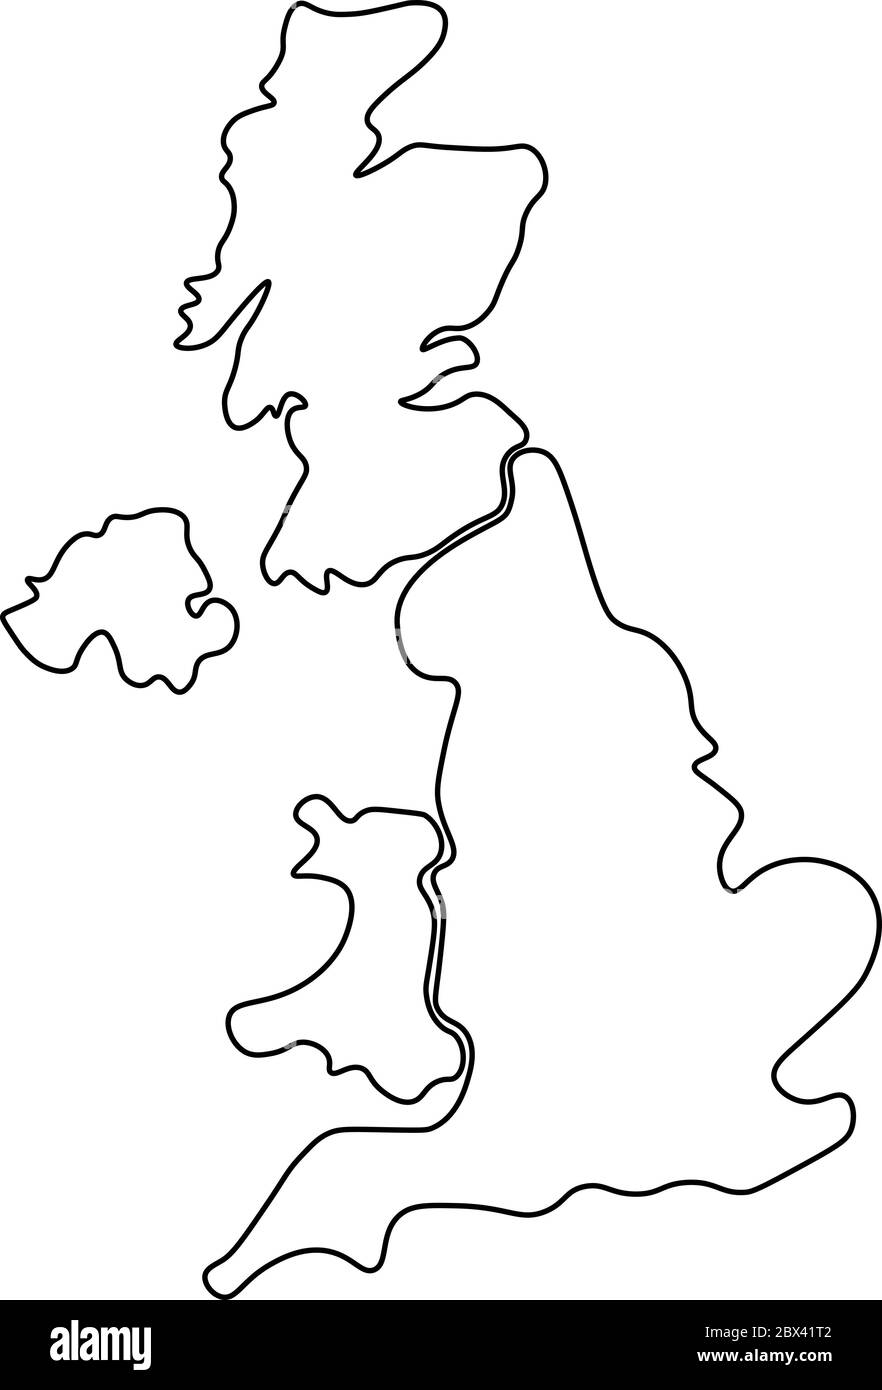 Großbritannien, auch bekannt als Großbritannien, von Großbritannien und Nordirland handgezeichnete leere Karte. Aufgeteilt in vier Länder - England, Wales, Schottland und NI. Einfache flache Vektorgrafik. Stock Vektor